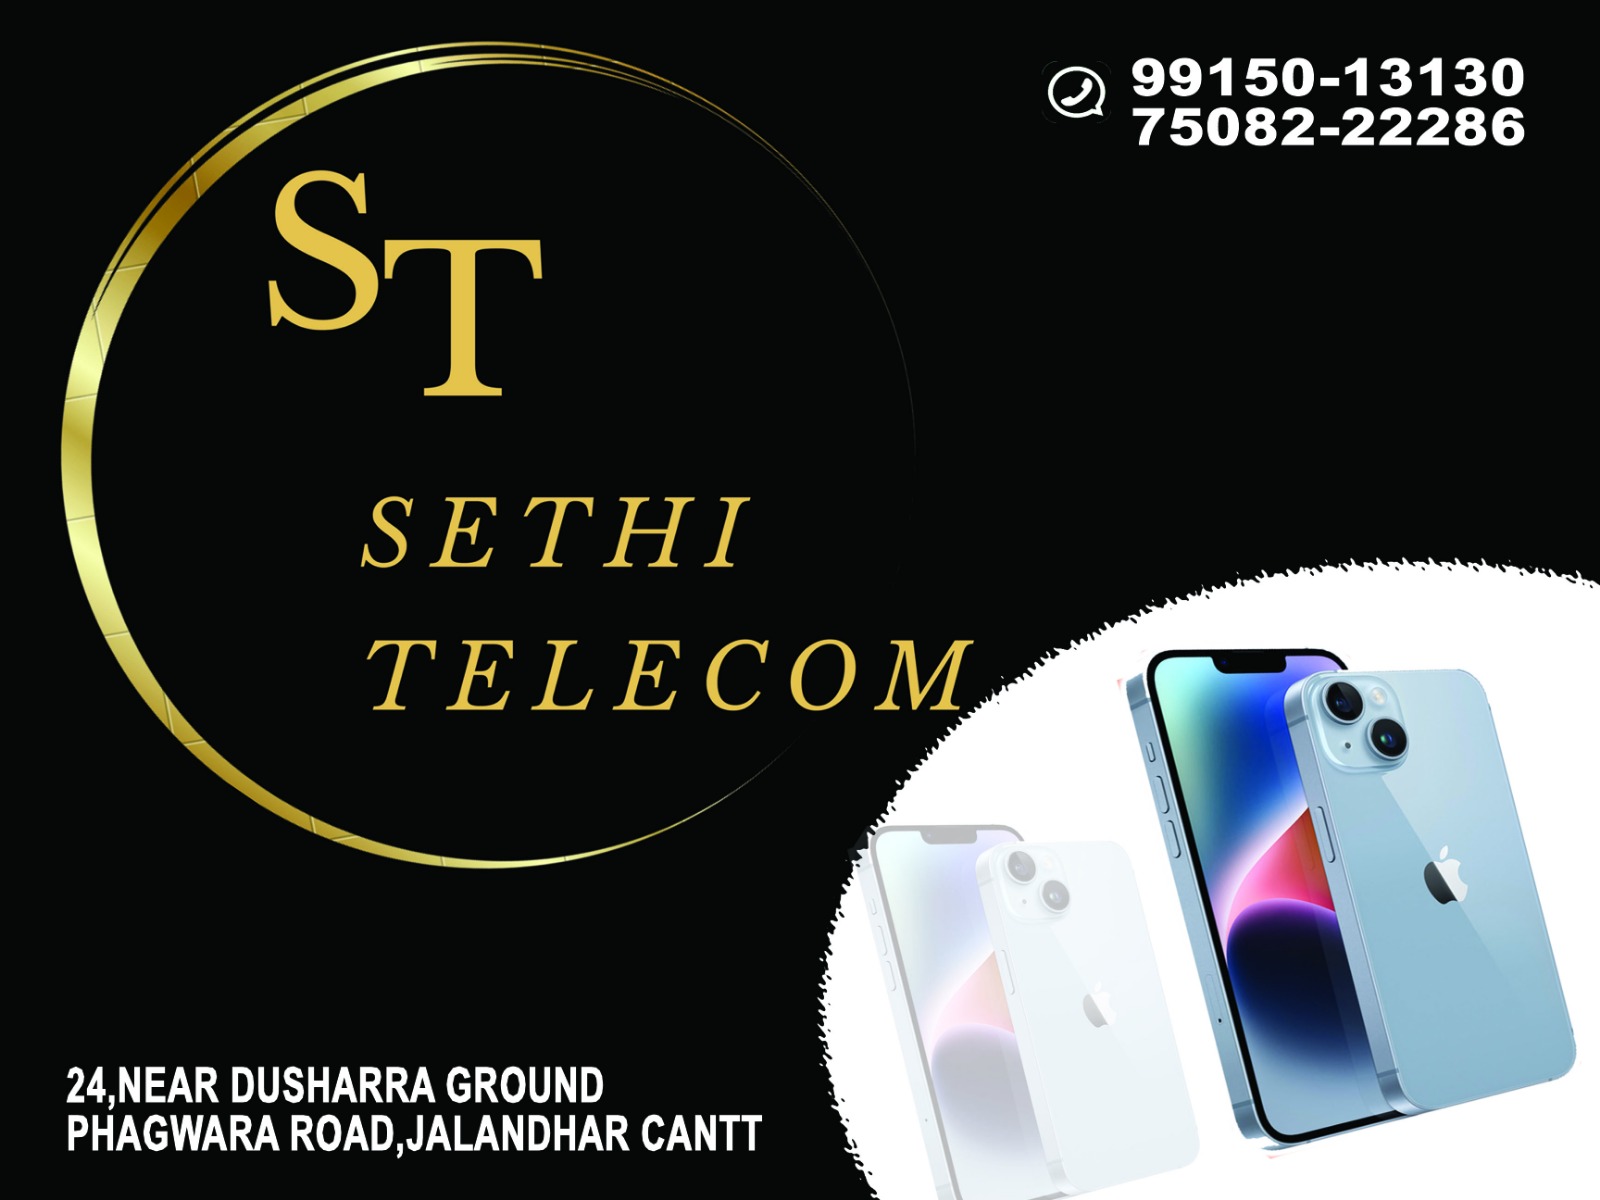 SEthi Telecom